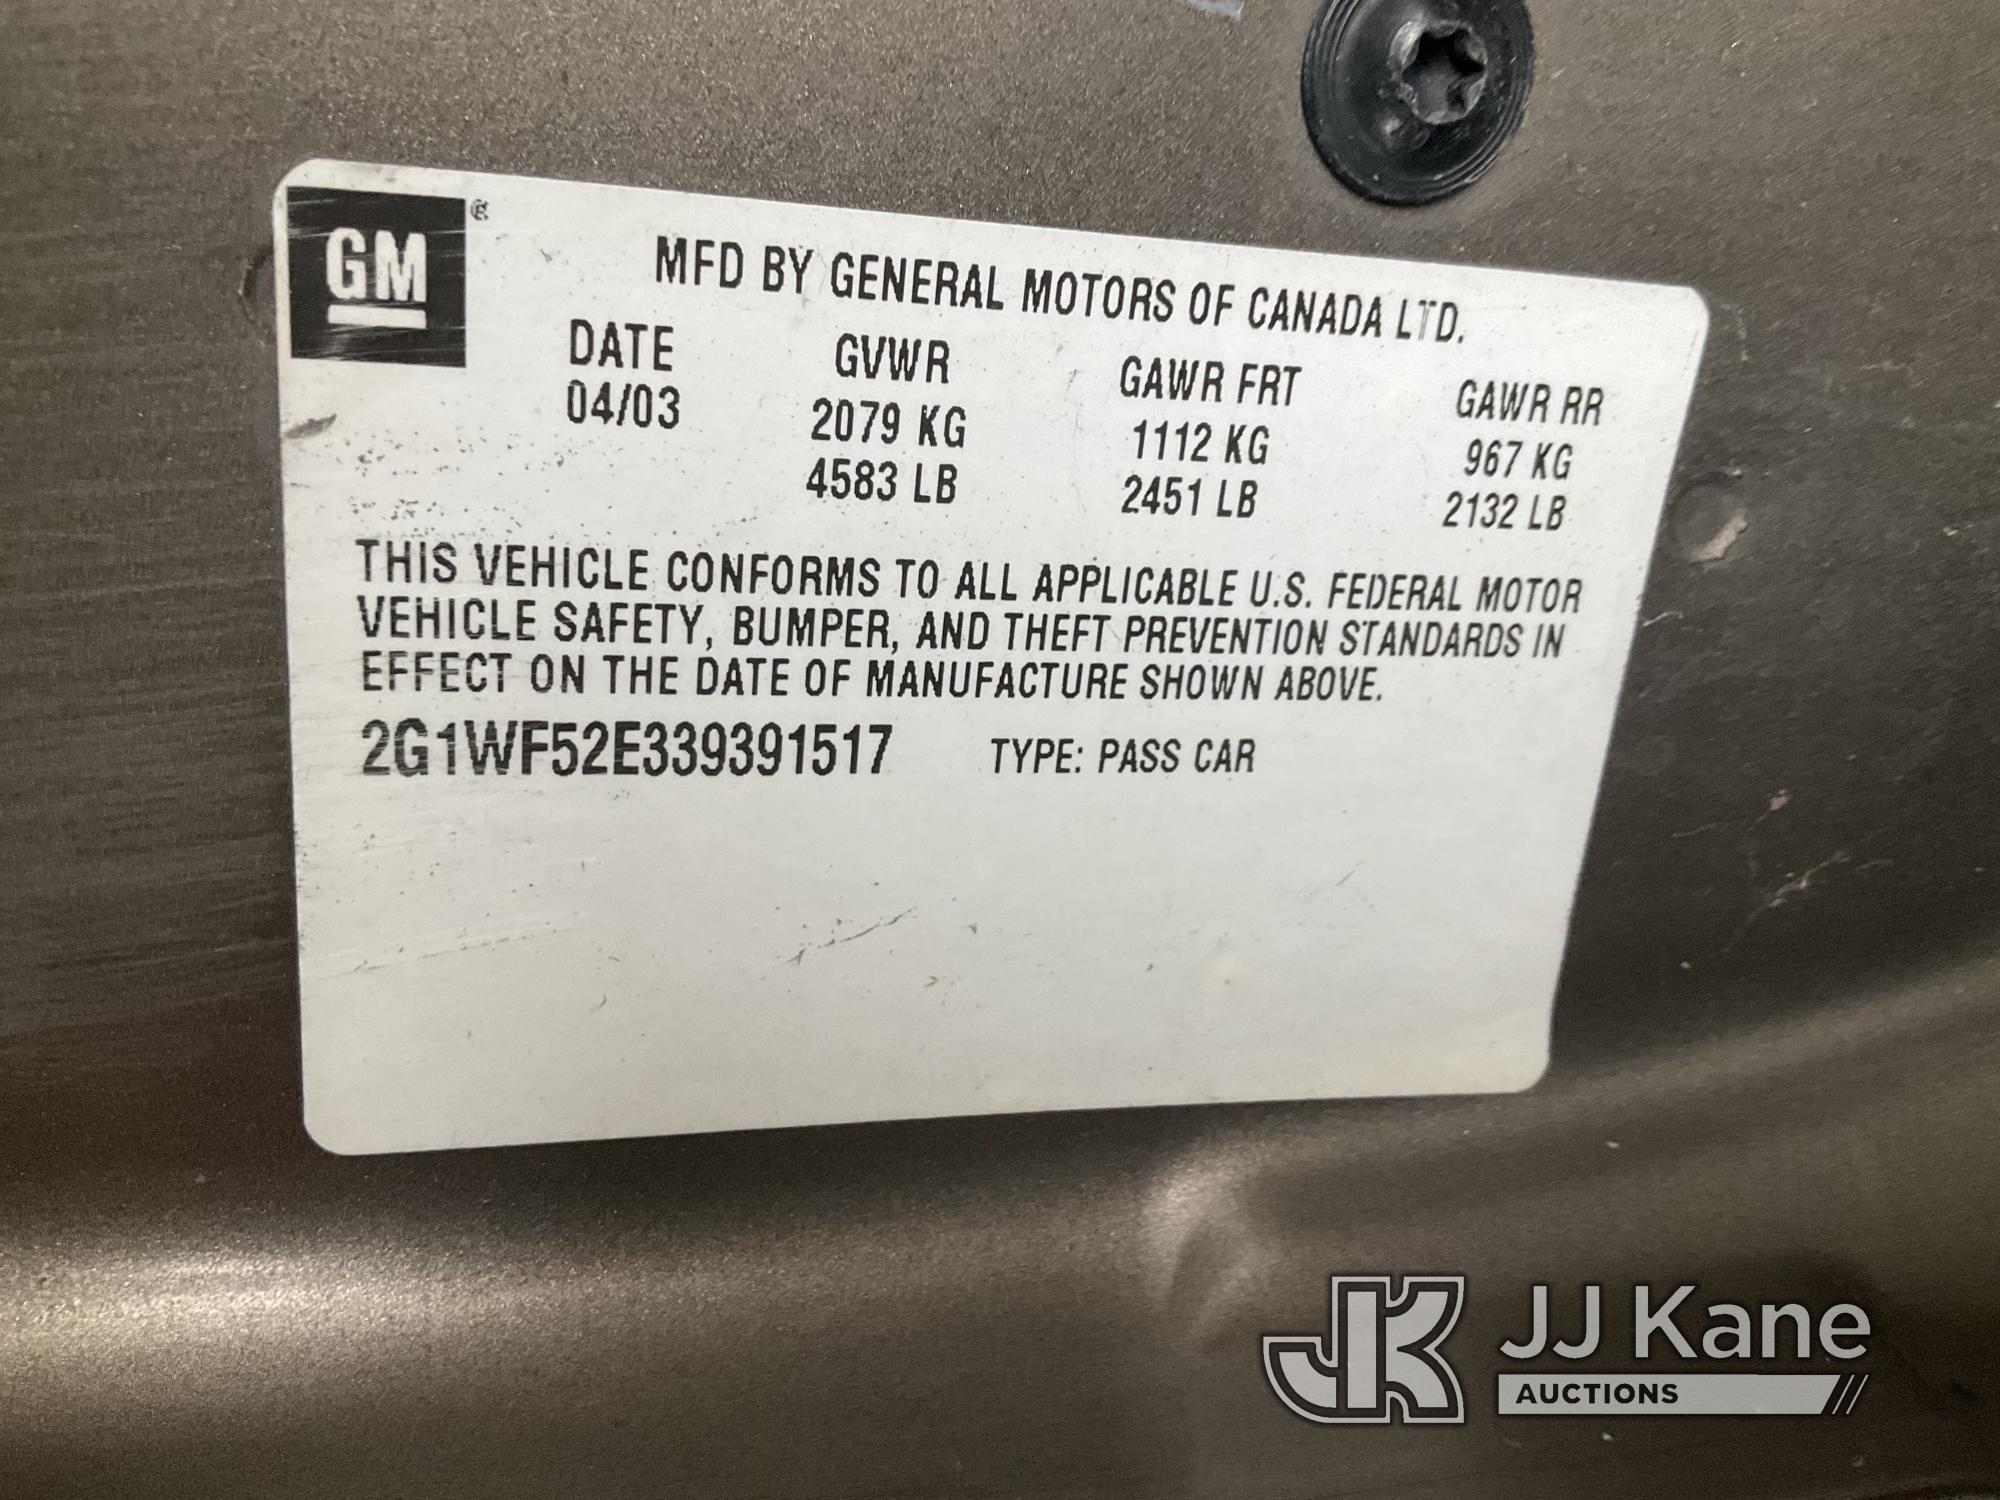 (Jurupa Valley, CA) 2003 Chevrolet Impala 4-Door Sedan Runs & Moves, Missing Left Headlight